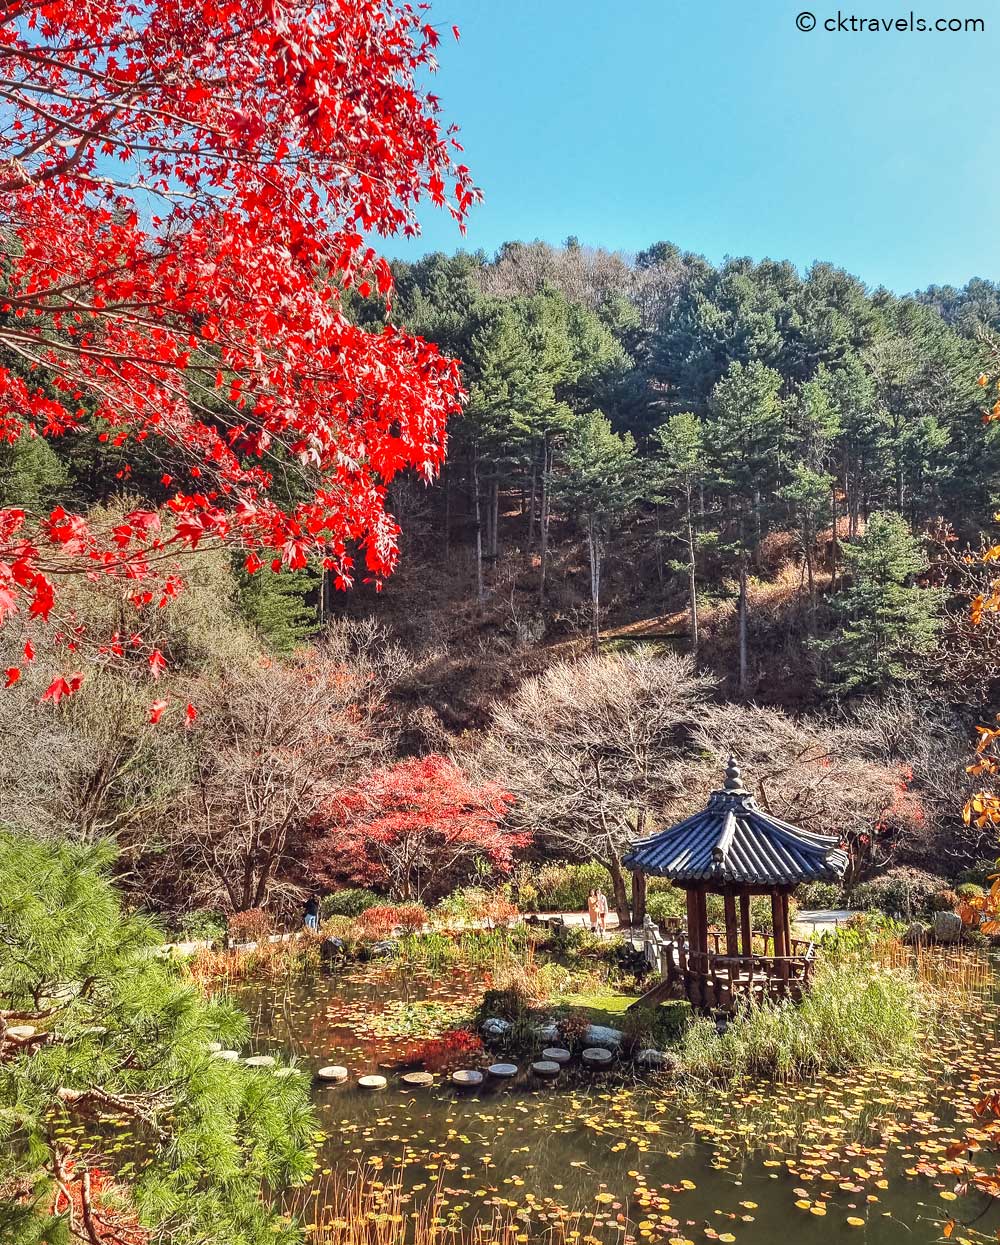 The Garden of Morning Calm near Seoul, South Korea